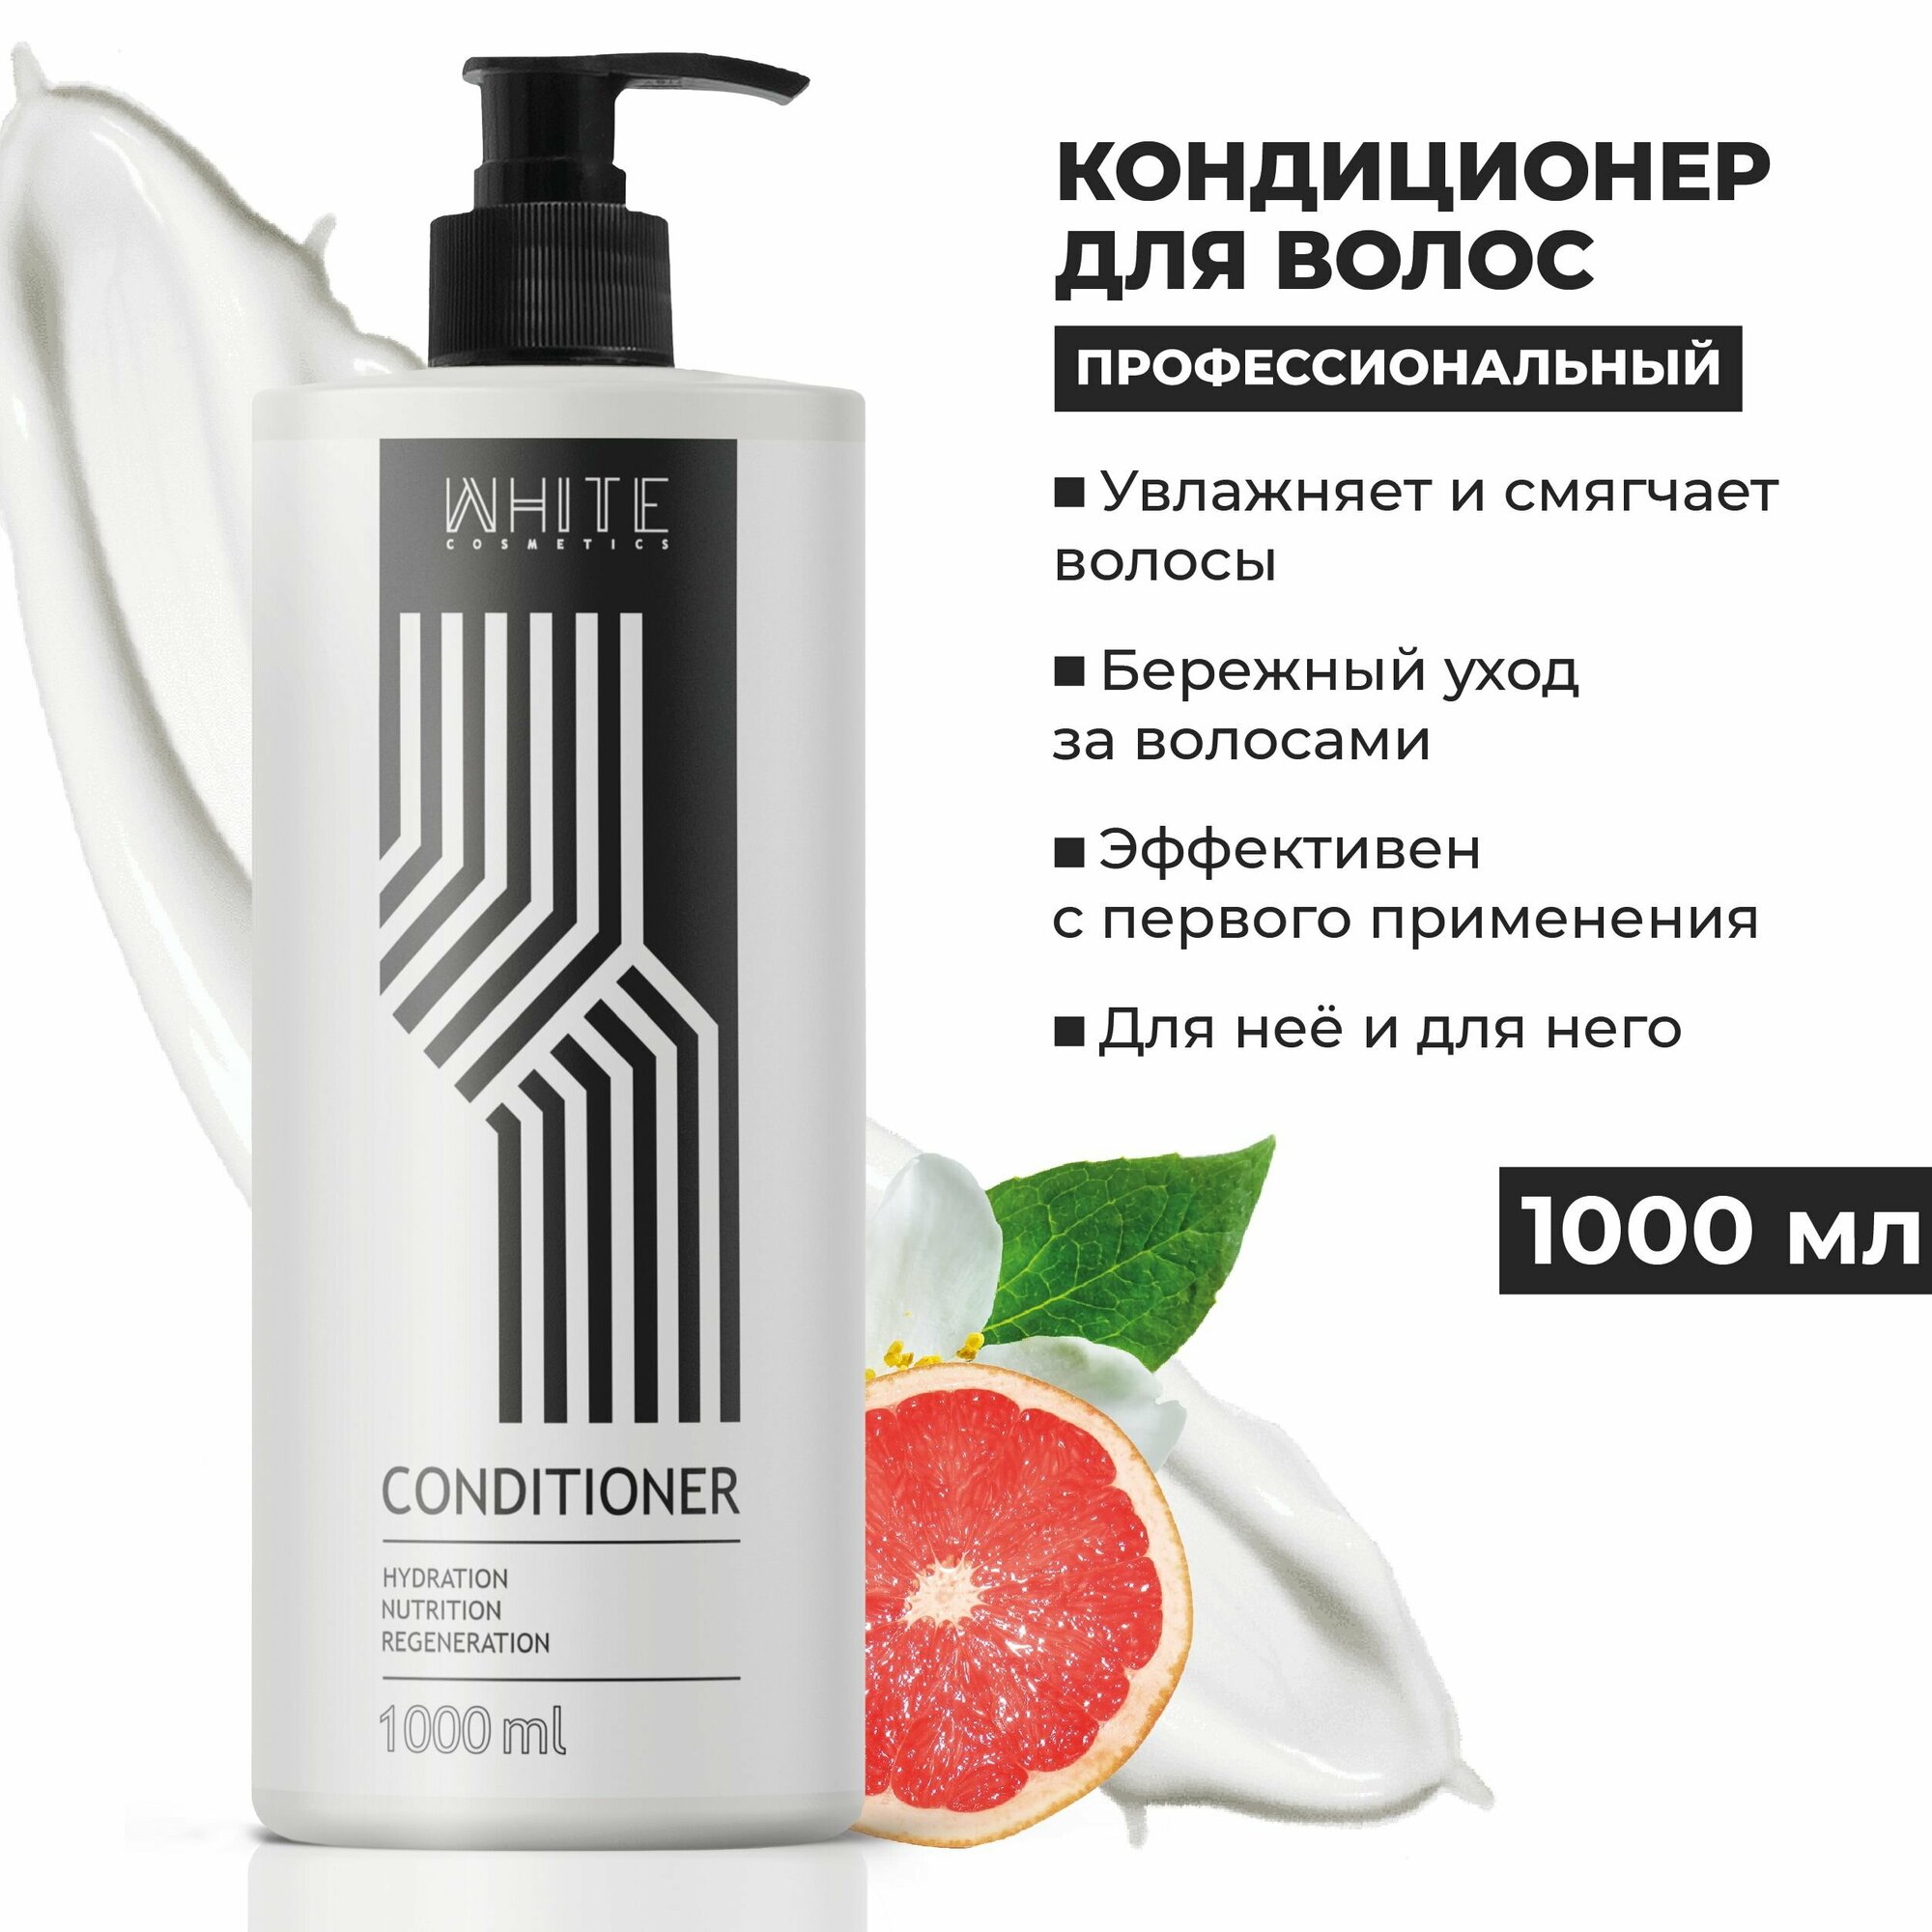 WHITE Кондиционер для волос 1000 мл. профессиональный увлажнение и питание против секущихся кончиков